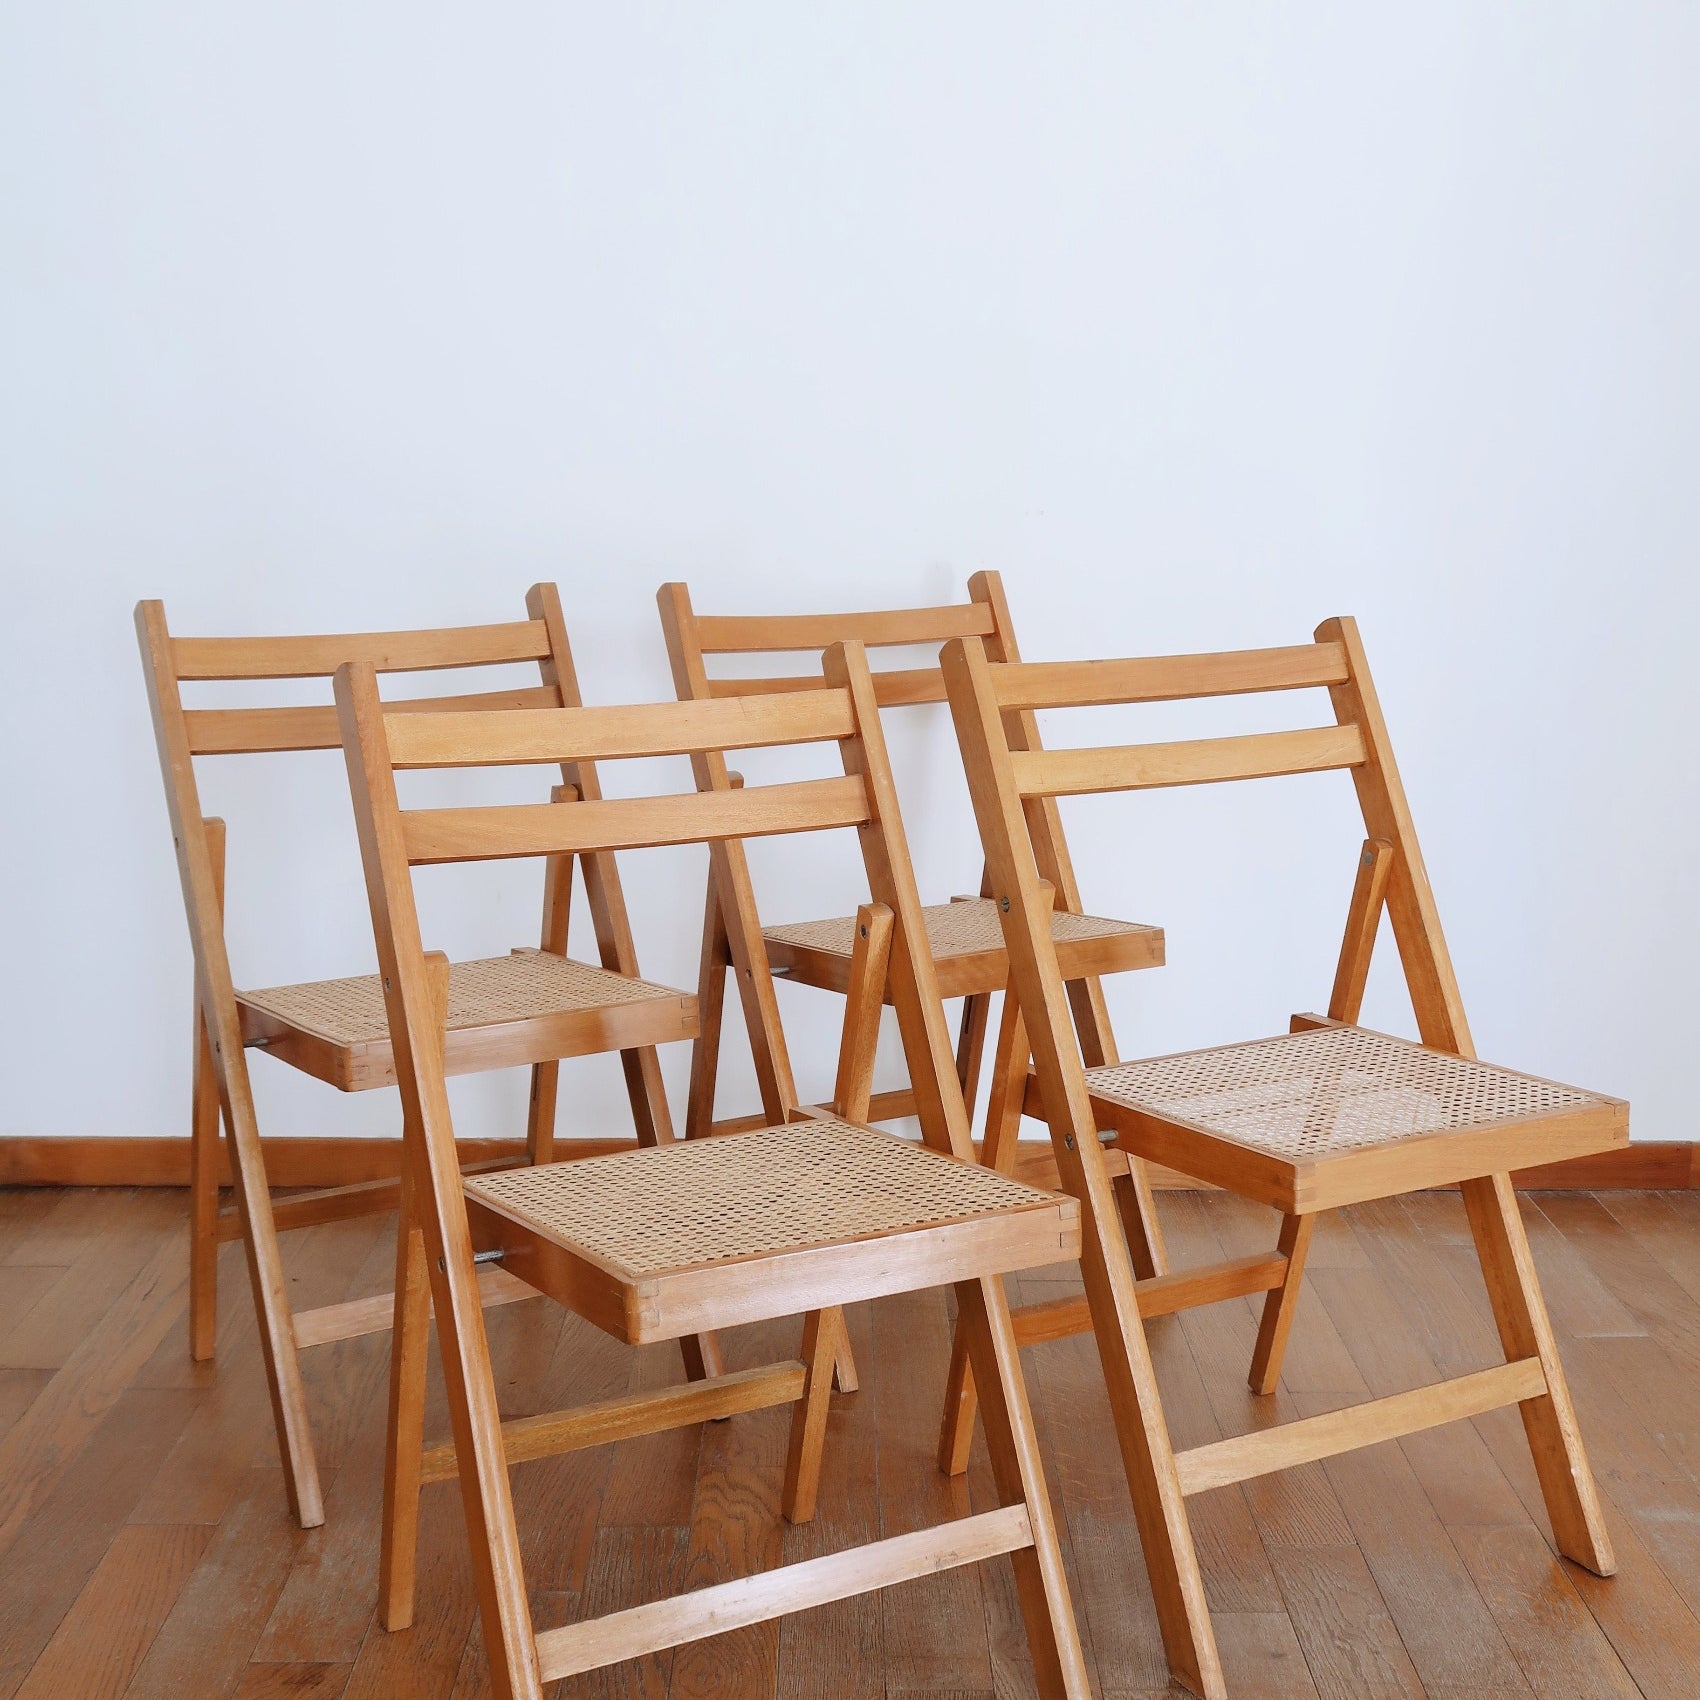 4 chaises pliantes cannées cannage bois vintage scandinave années 70 clair pliable